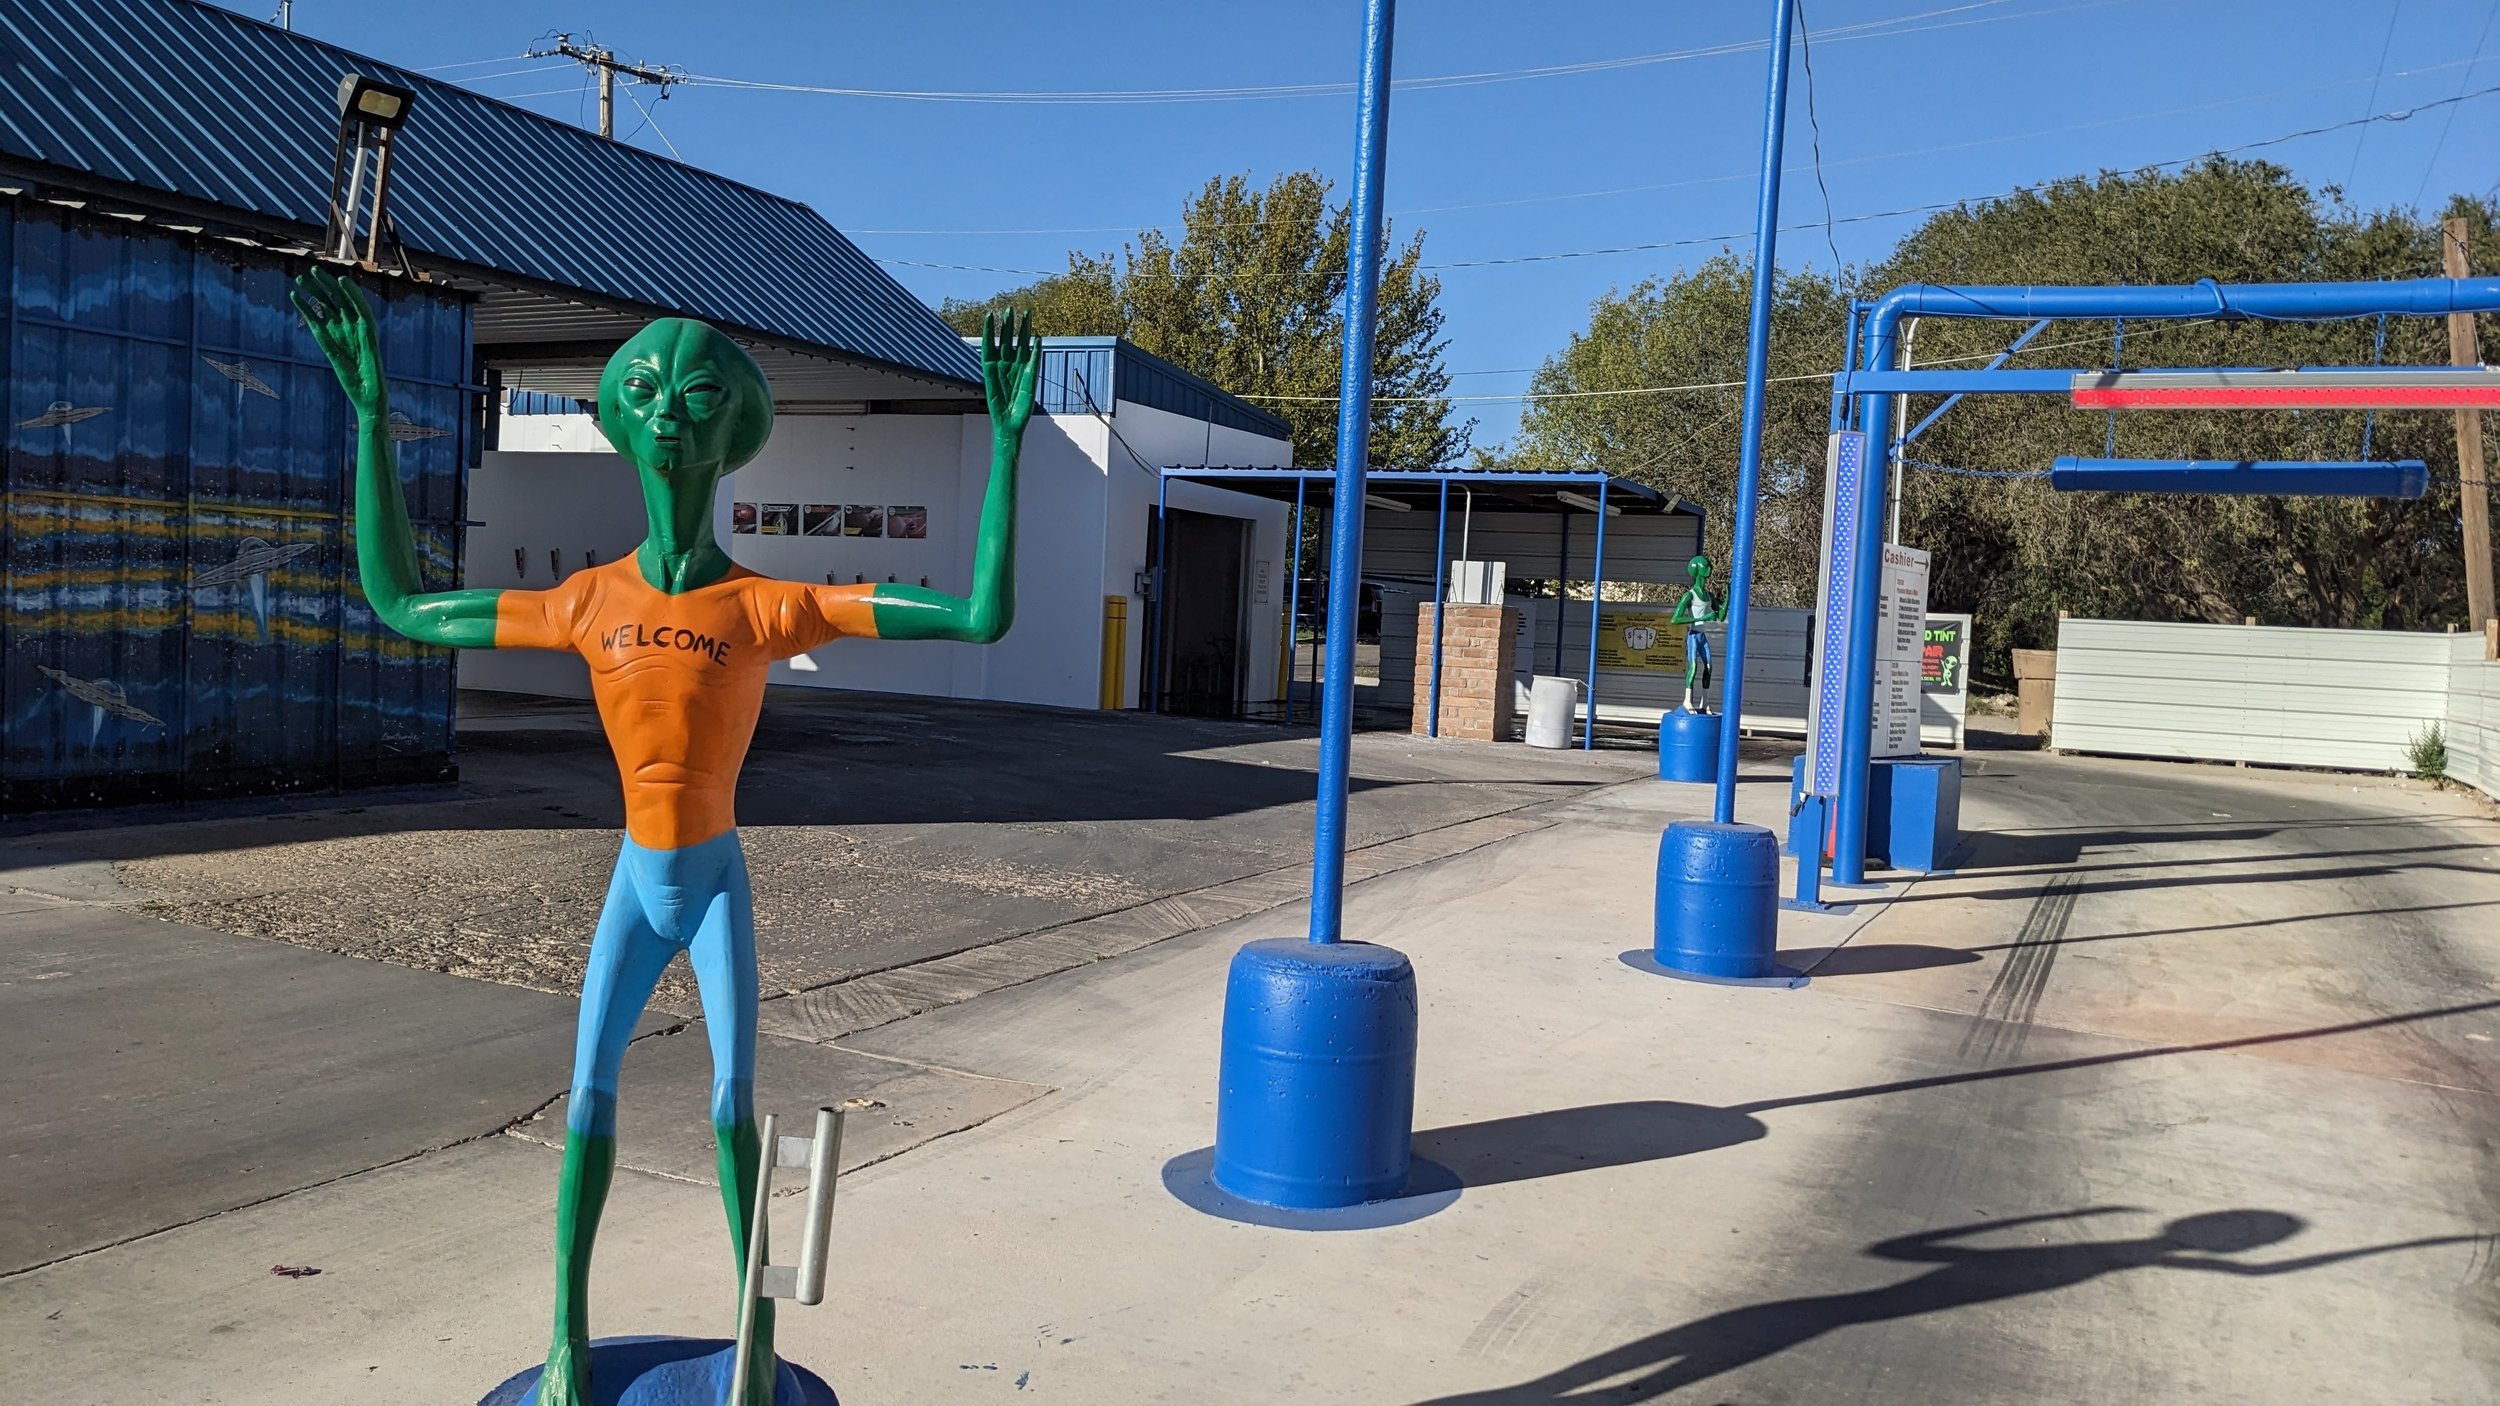 Alien Car Wash - Galaxy Car Wash in Roswell New Mexico